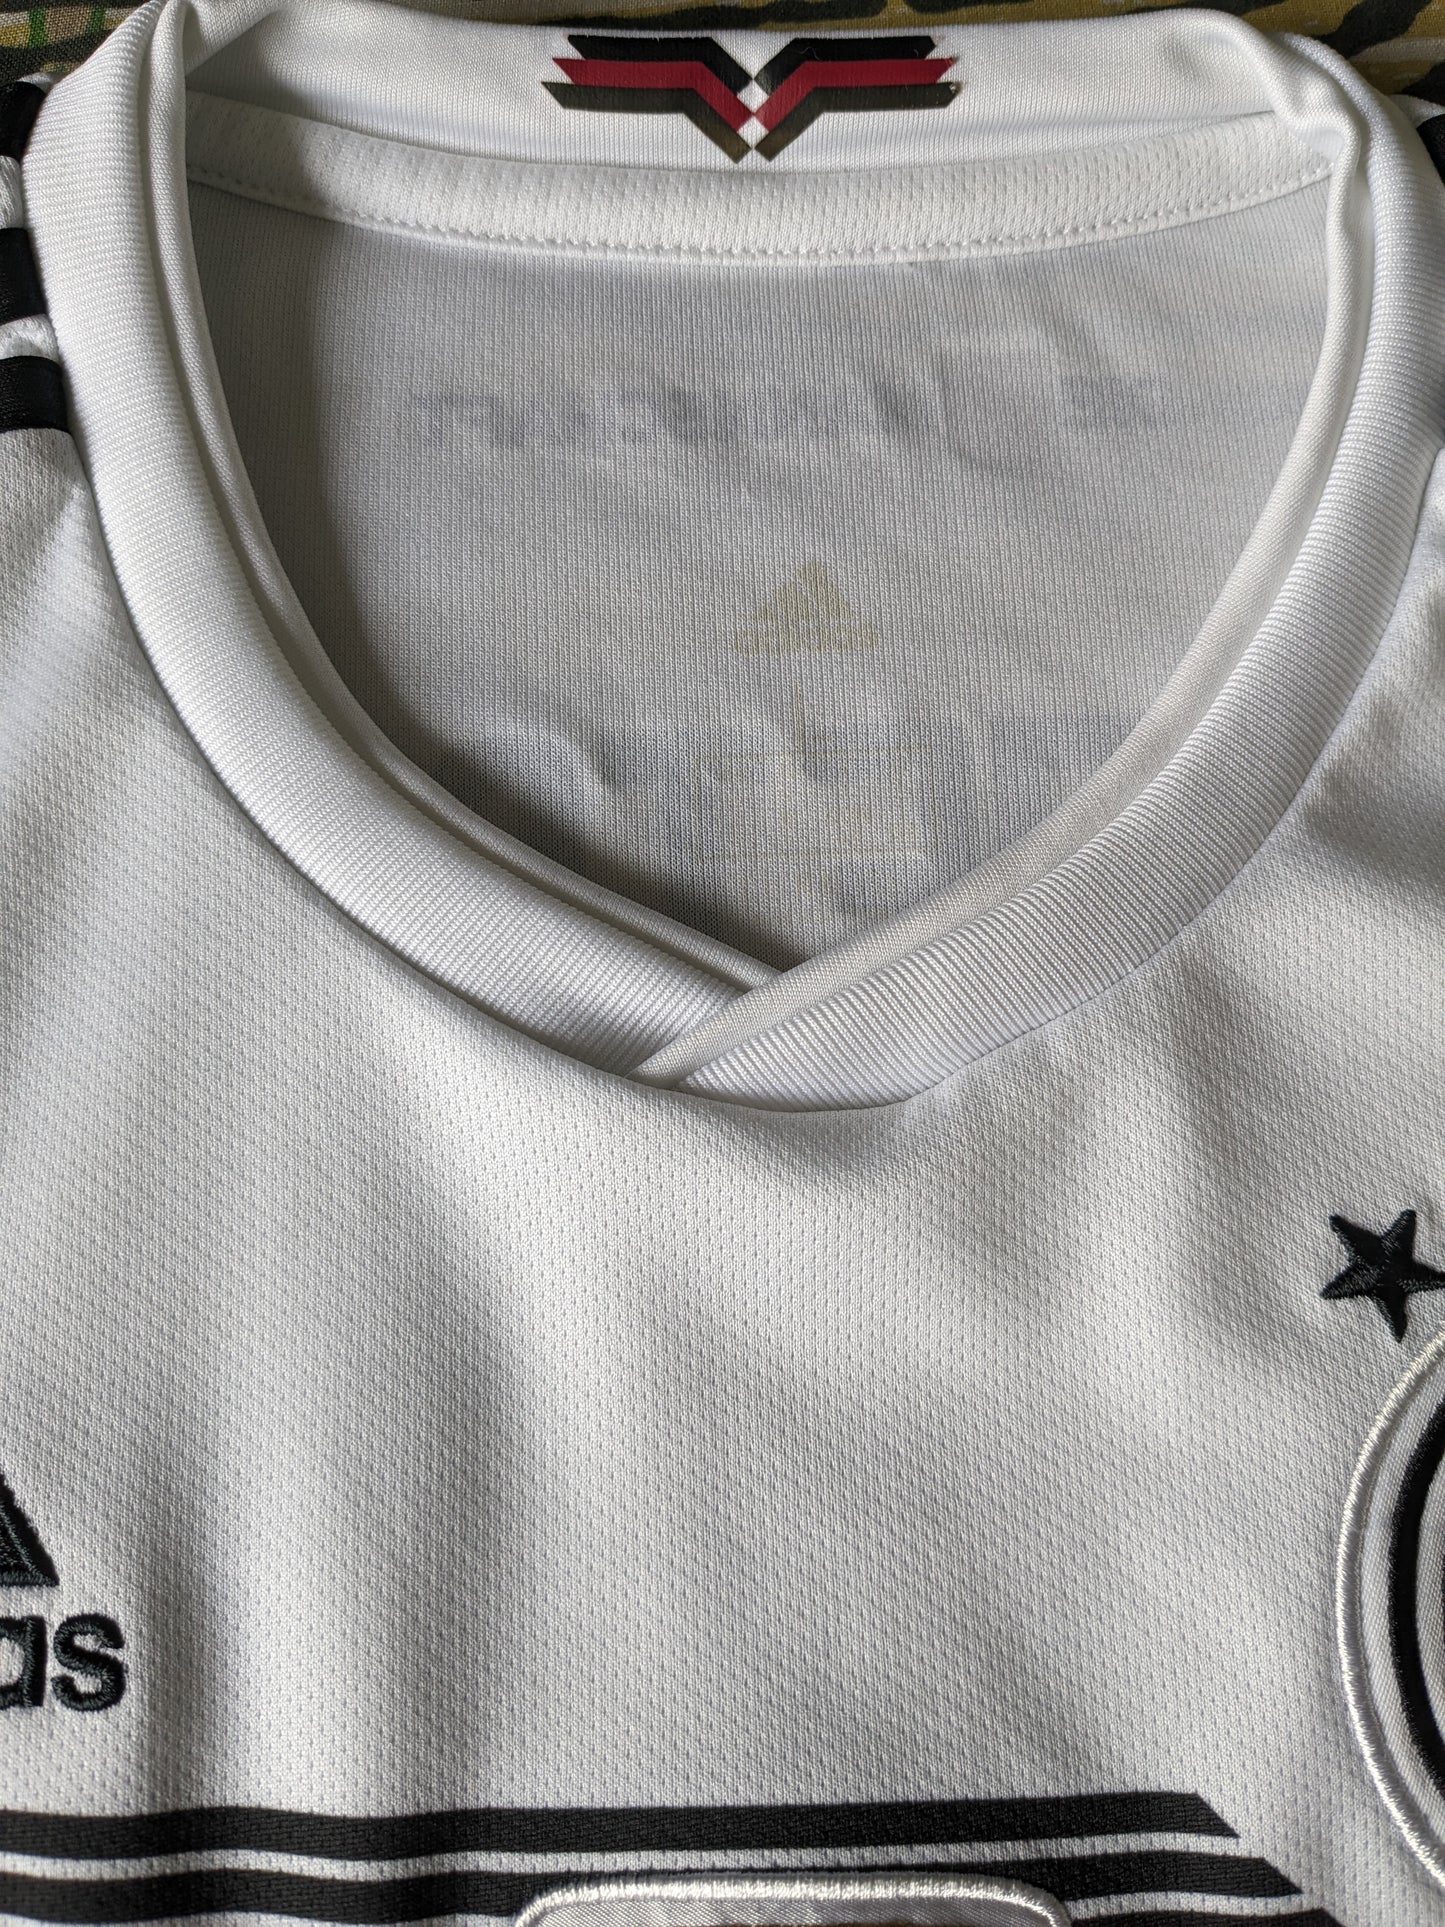 Adidas Deutscher Fussball Bund Shirt. White black colored. FIFA 2014. Size M.